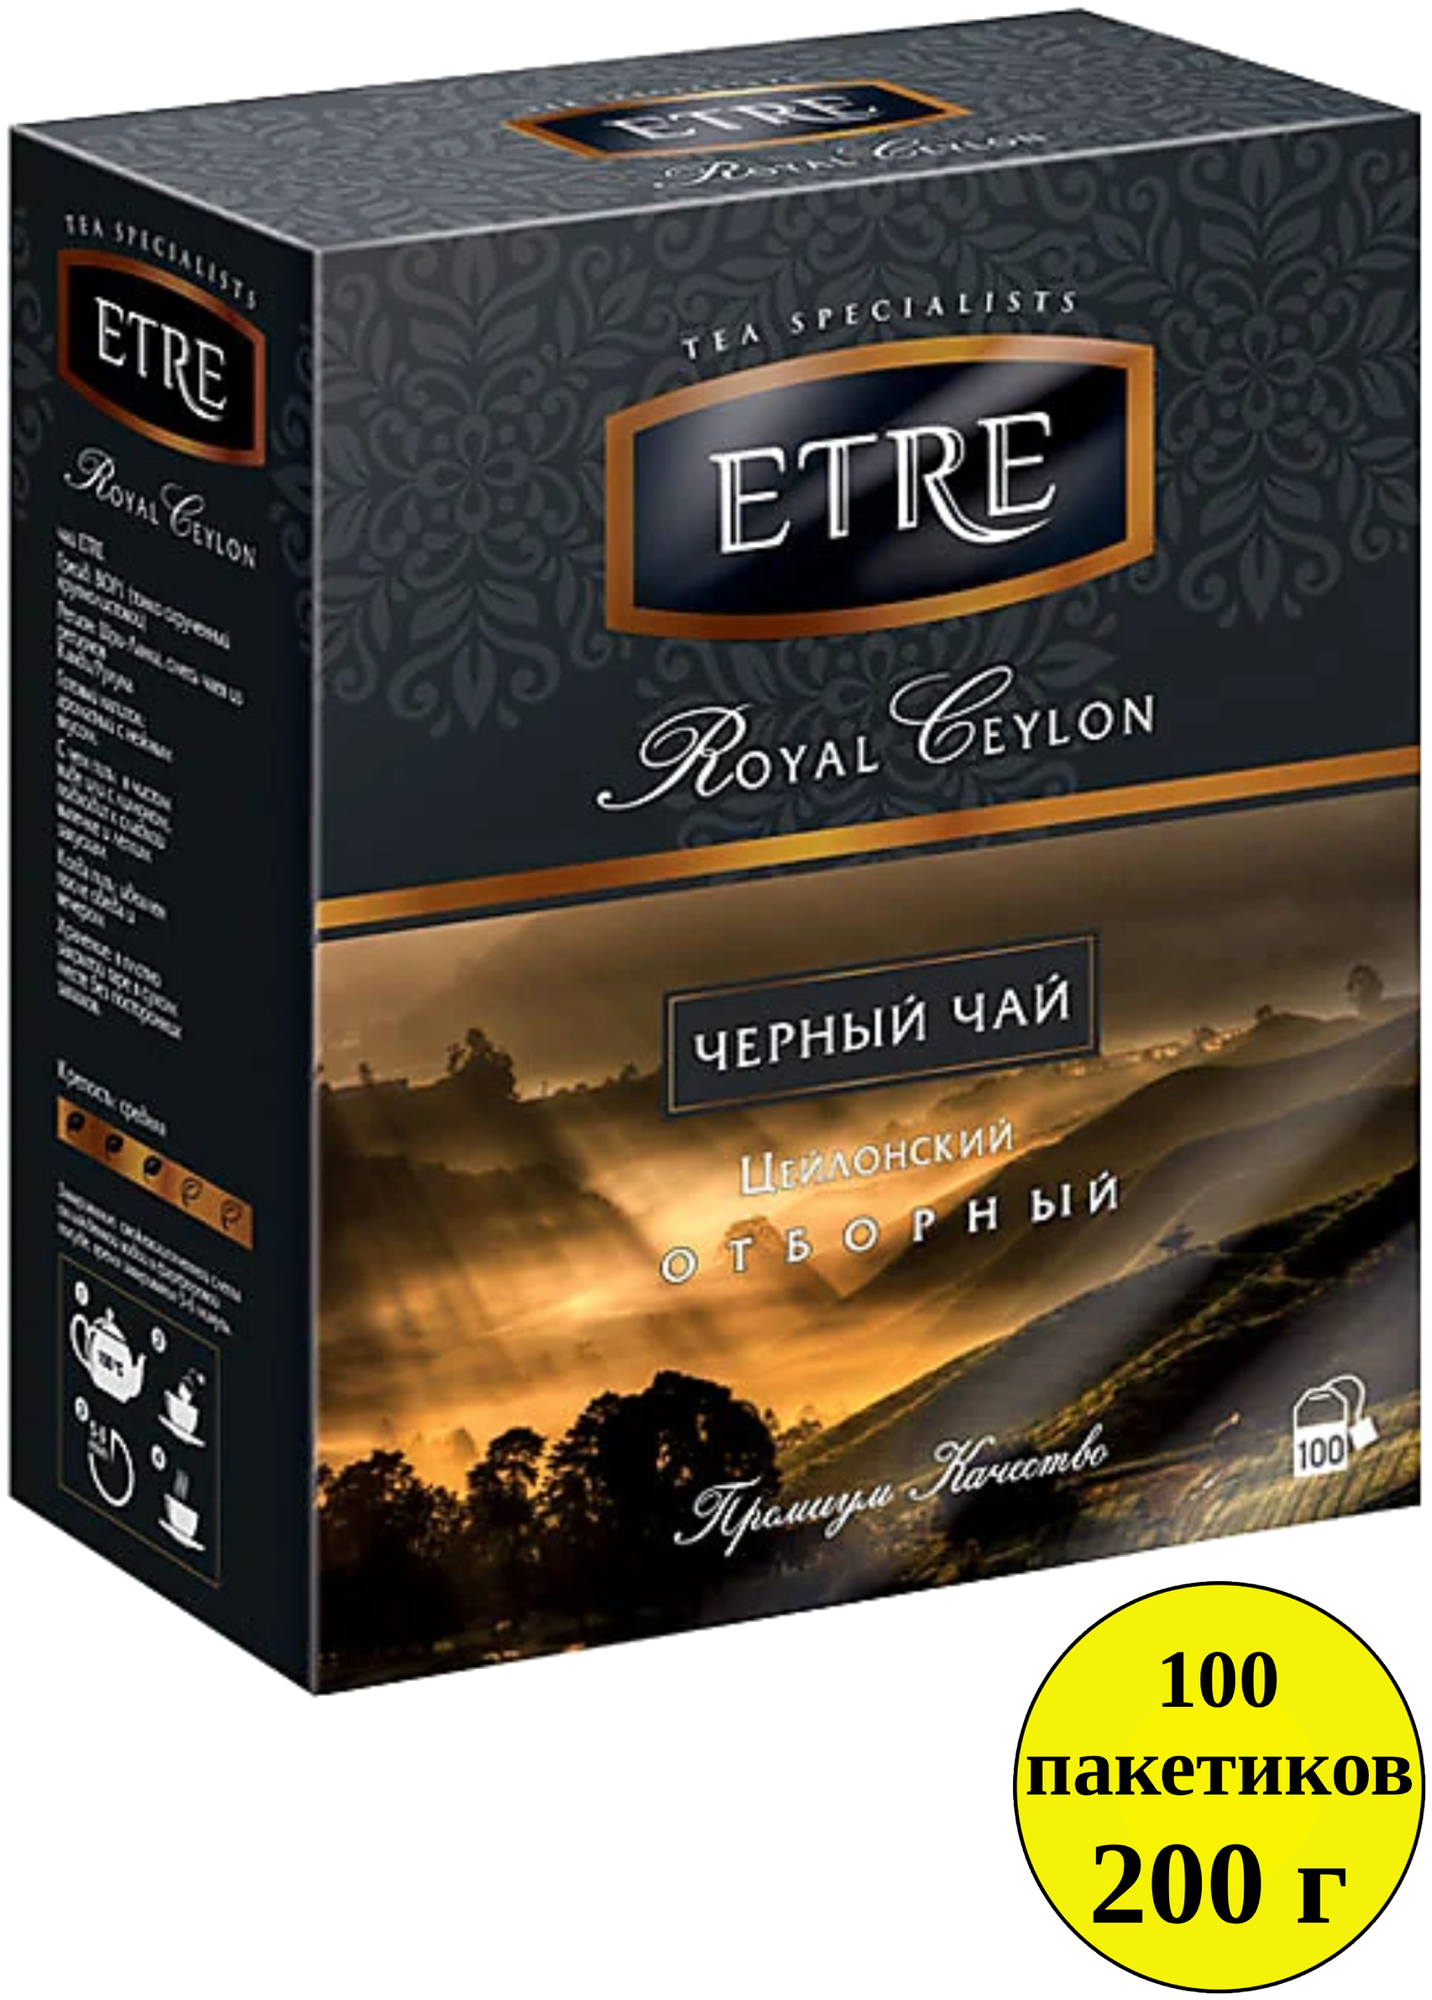 Чай KDV ETRE royal Ceylon черный цейлонский отборный, 100 пакетиков